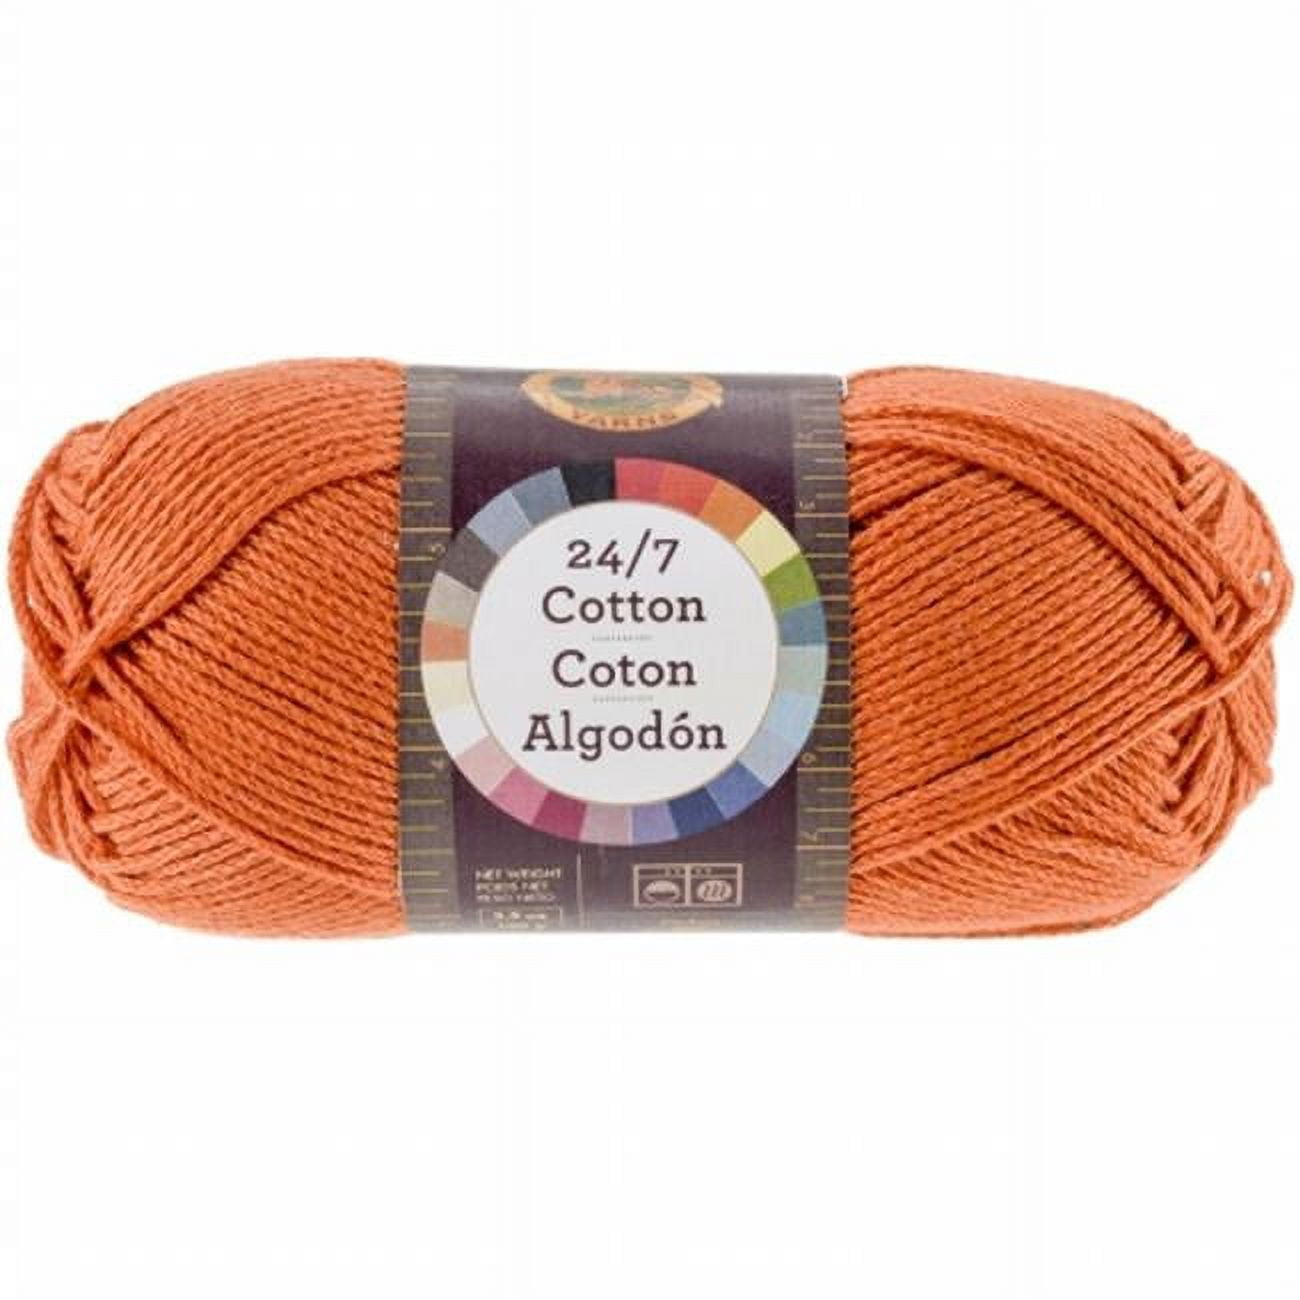 Lion Brand 761-133 24&7 Cotton Yarn - Tangerine